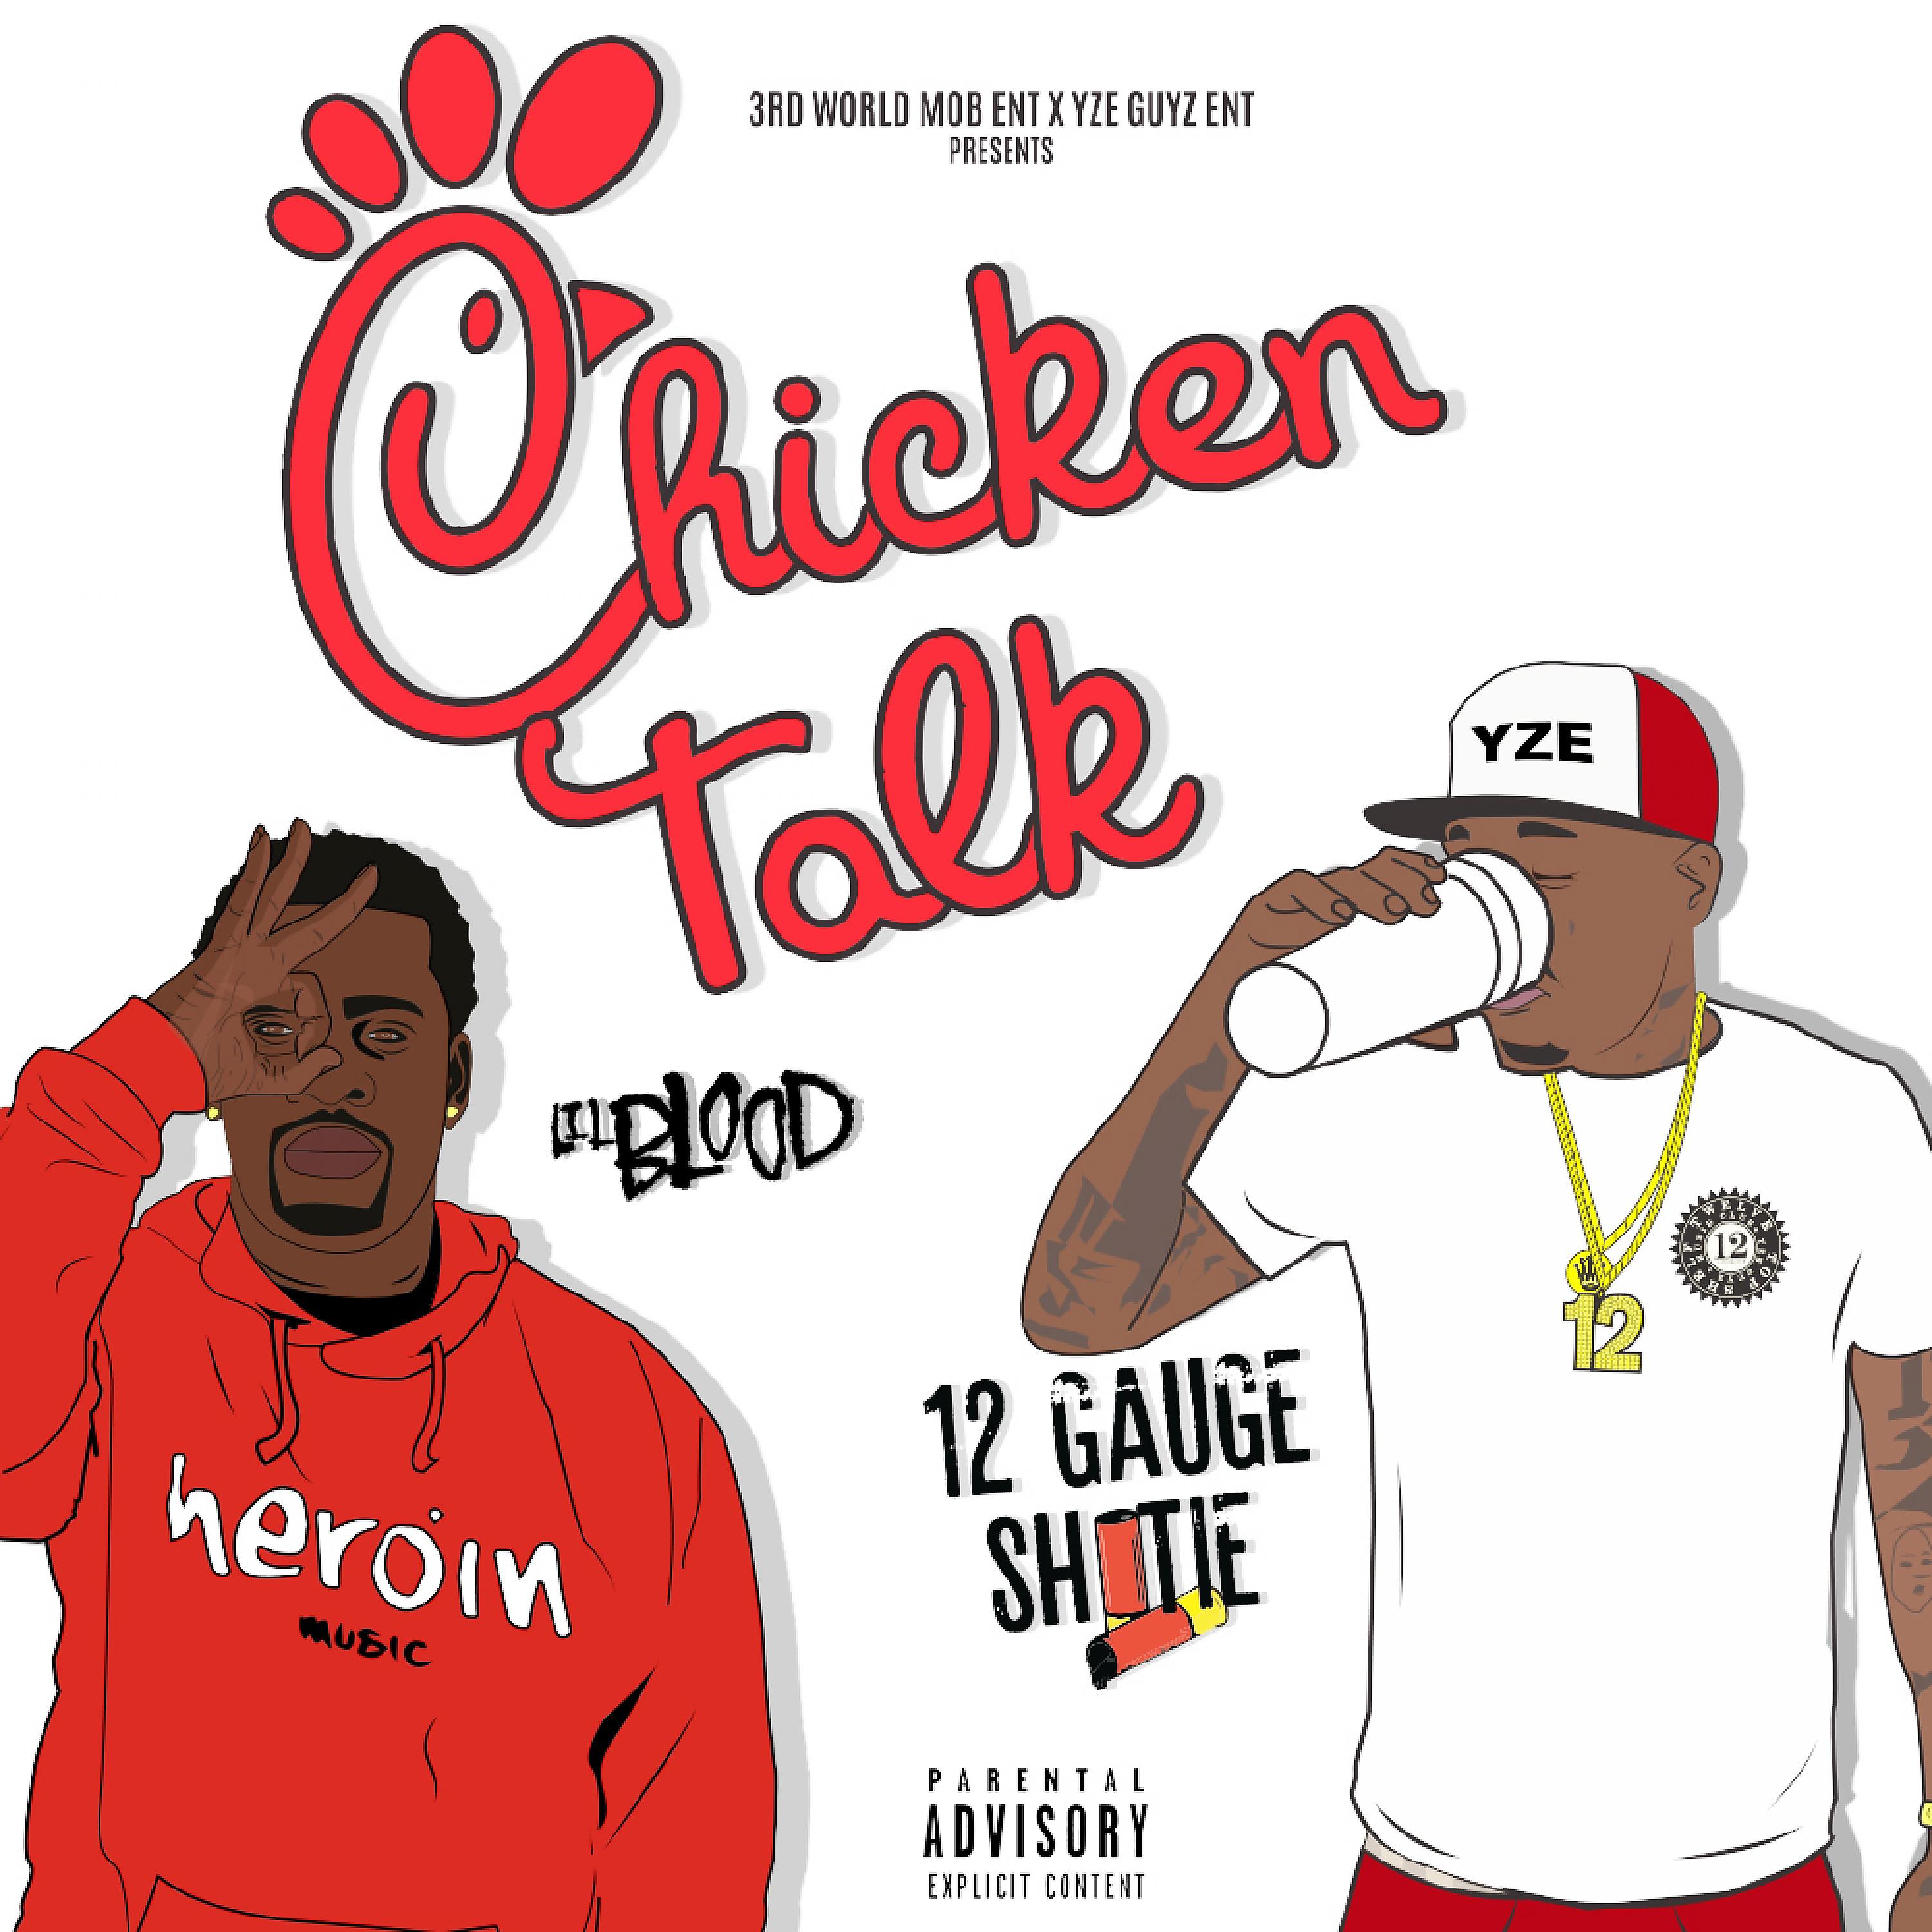 Постер альбома Chicken Talk